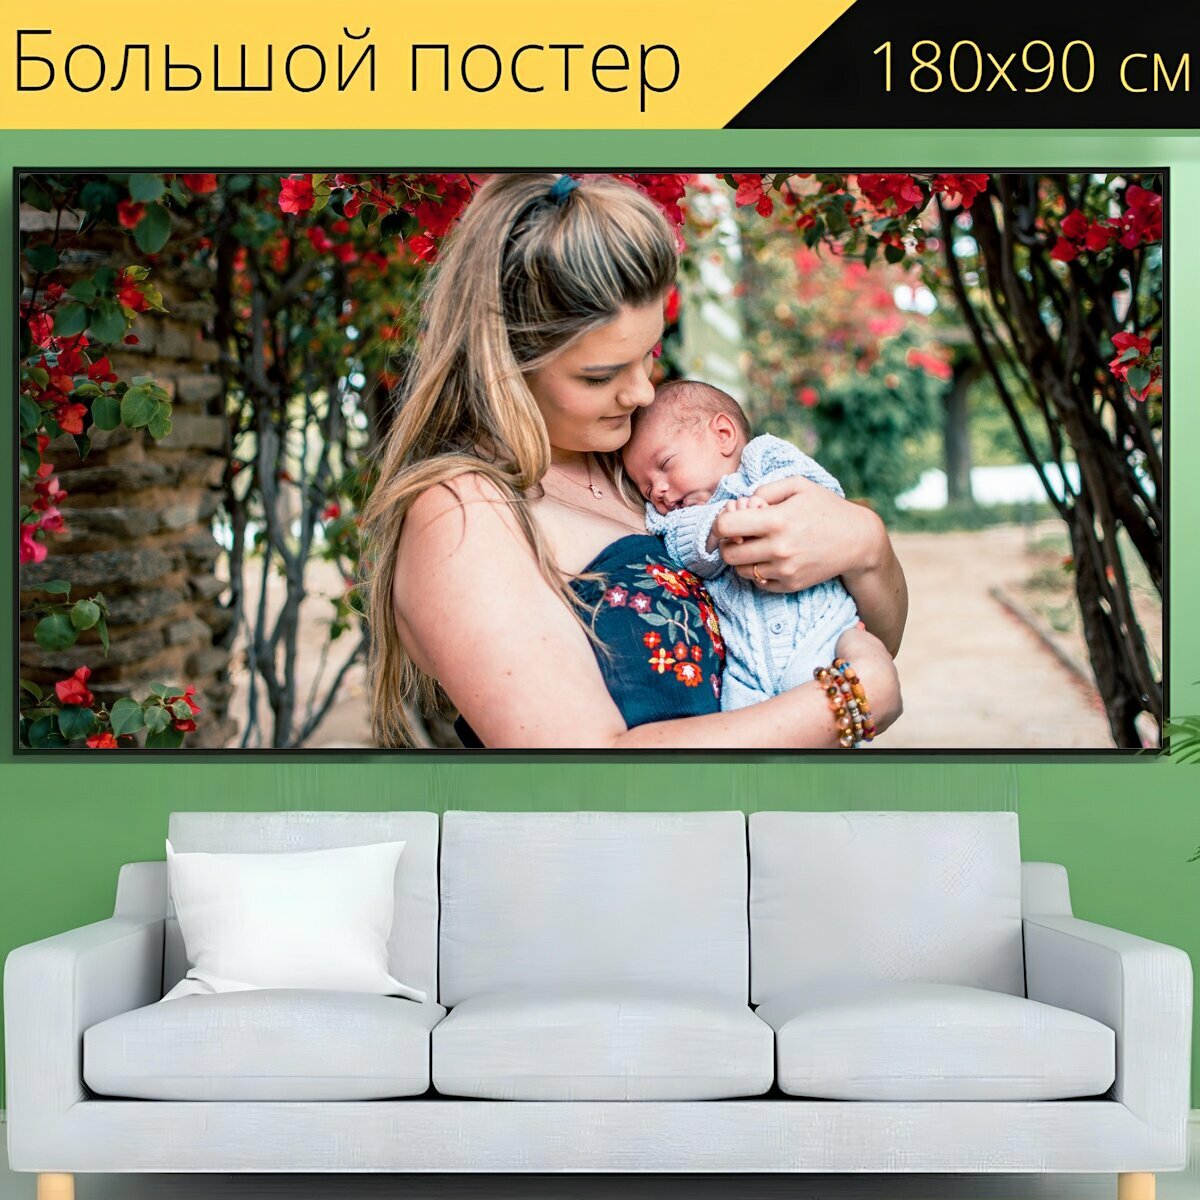 Большой постер "Мать сын, материнство, новорожденный" 180 x 90 см. для интерьера